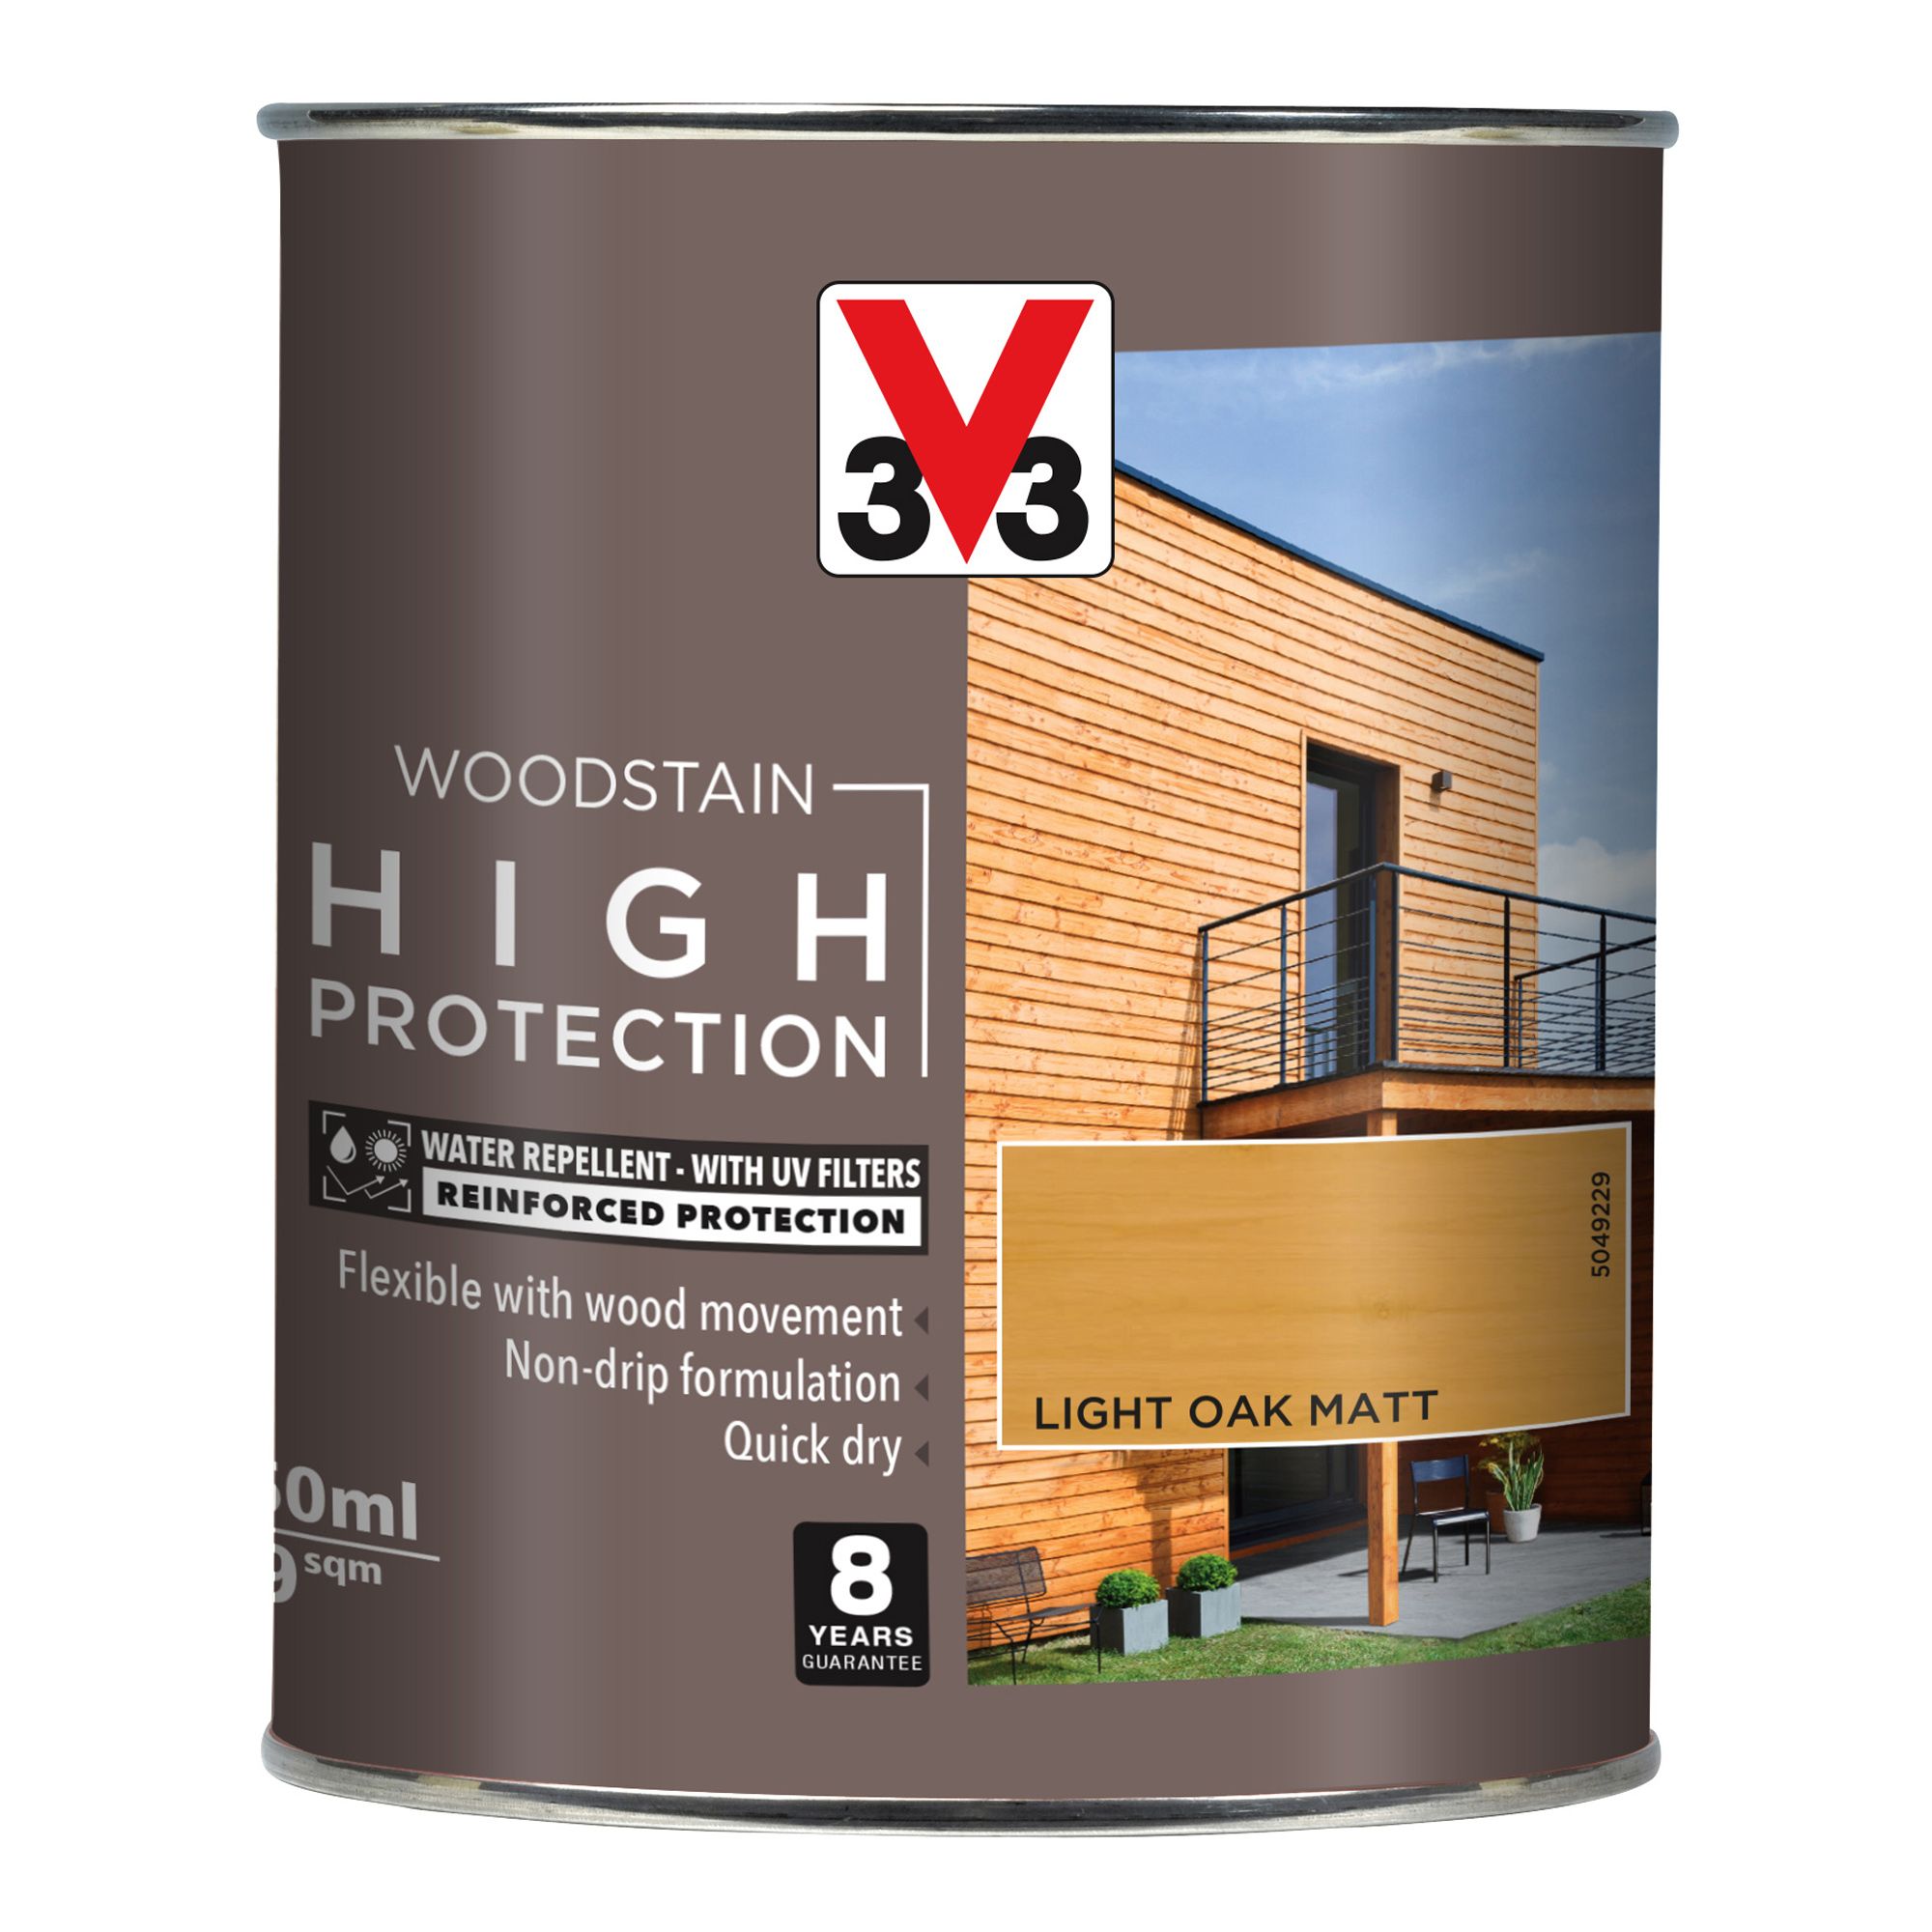 V33 High protection Light oak Matt Wood stain, 750ml